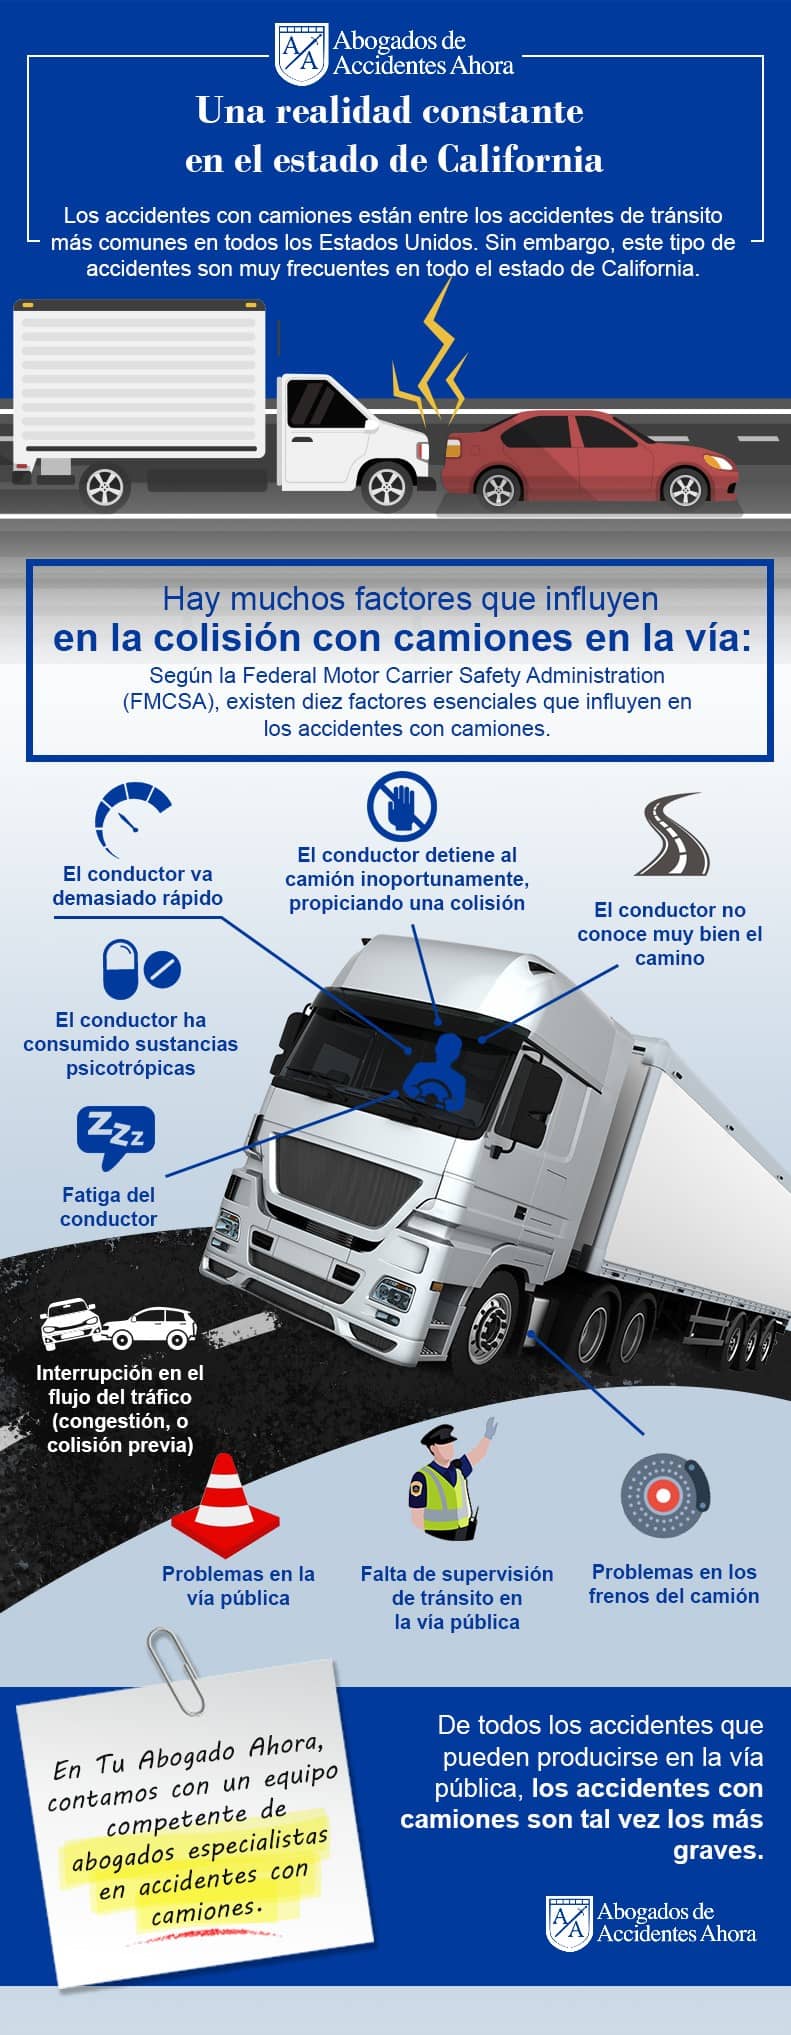 Accidentes y lesiones de camiones, Abogados de Accidentes Ahora